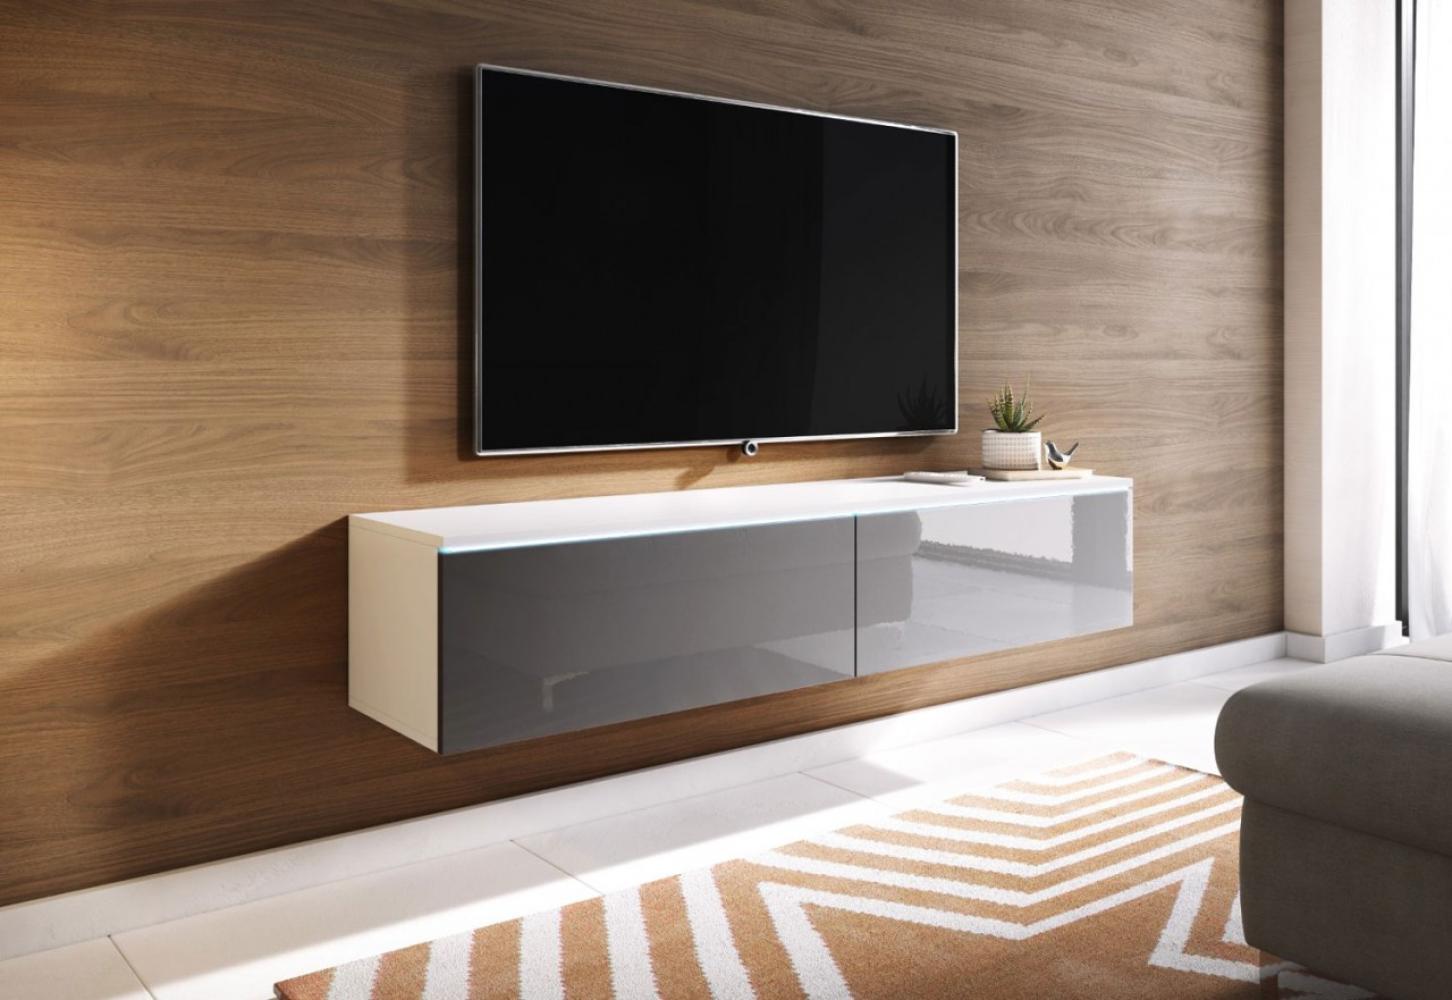 Lowboard "Lowboard D" TV-Unterschrank 140cm weiß grau hochglanz grifflos Bild 1